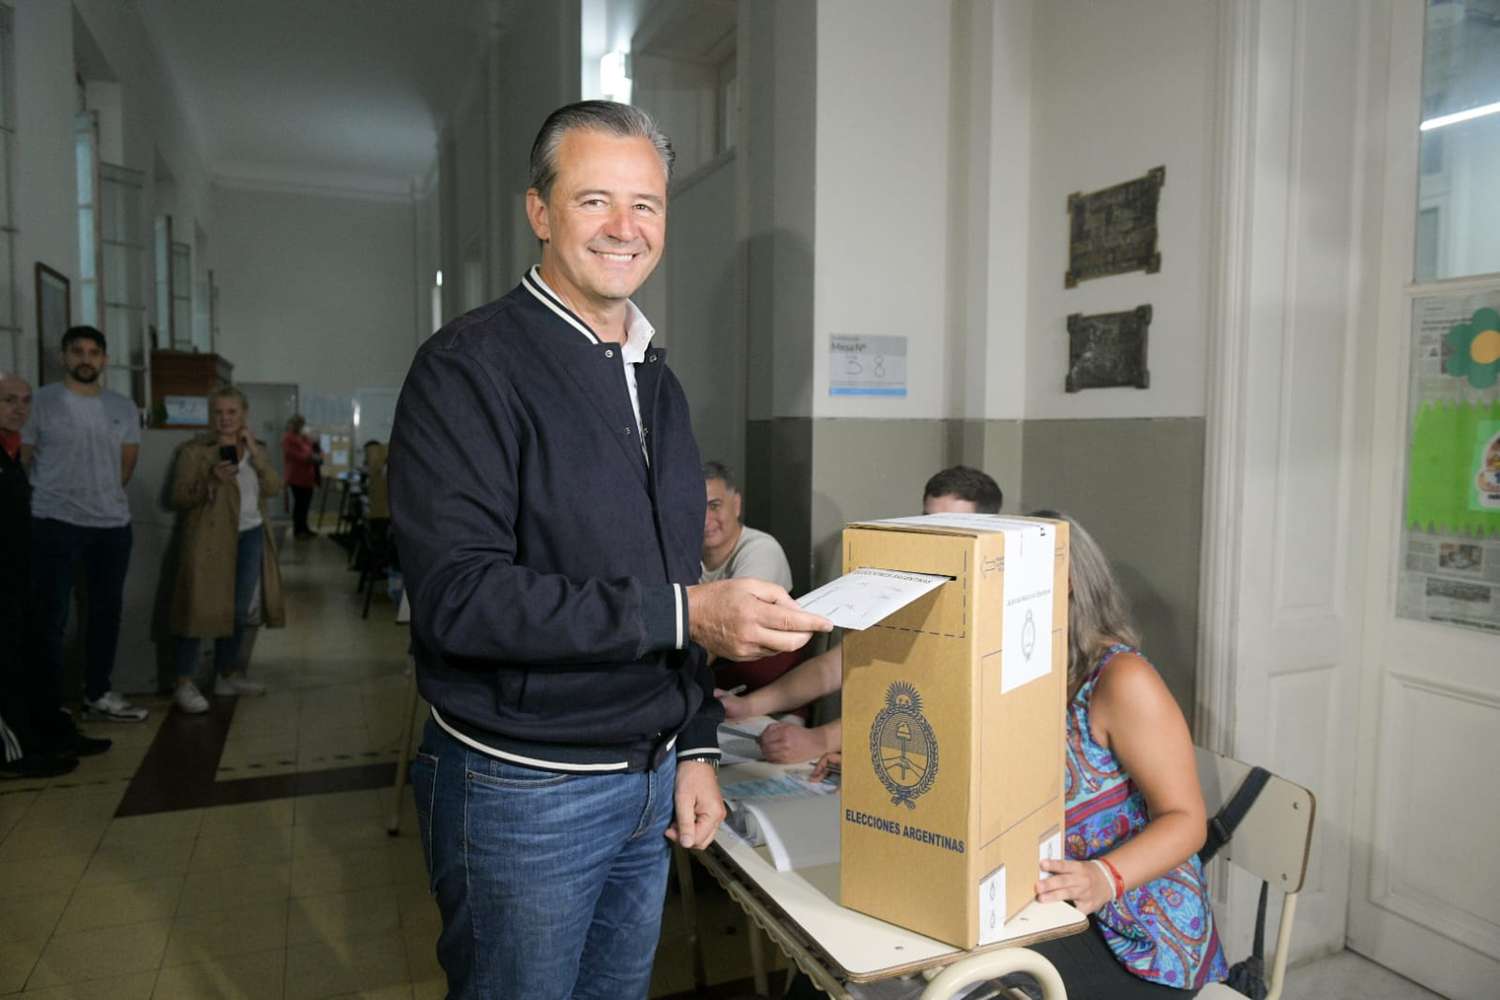 El candidato de Unión por la Patria, Adán Bahl, votó y destacó la jornada democrática